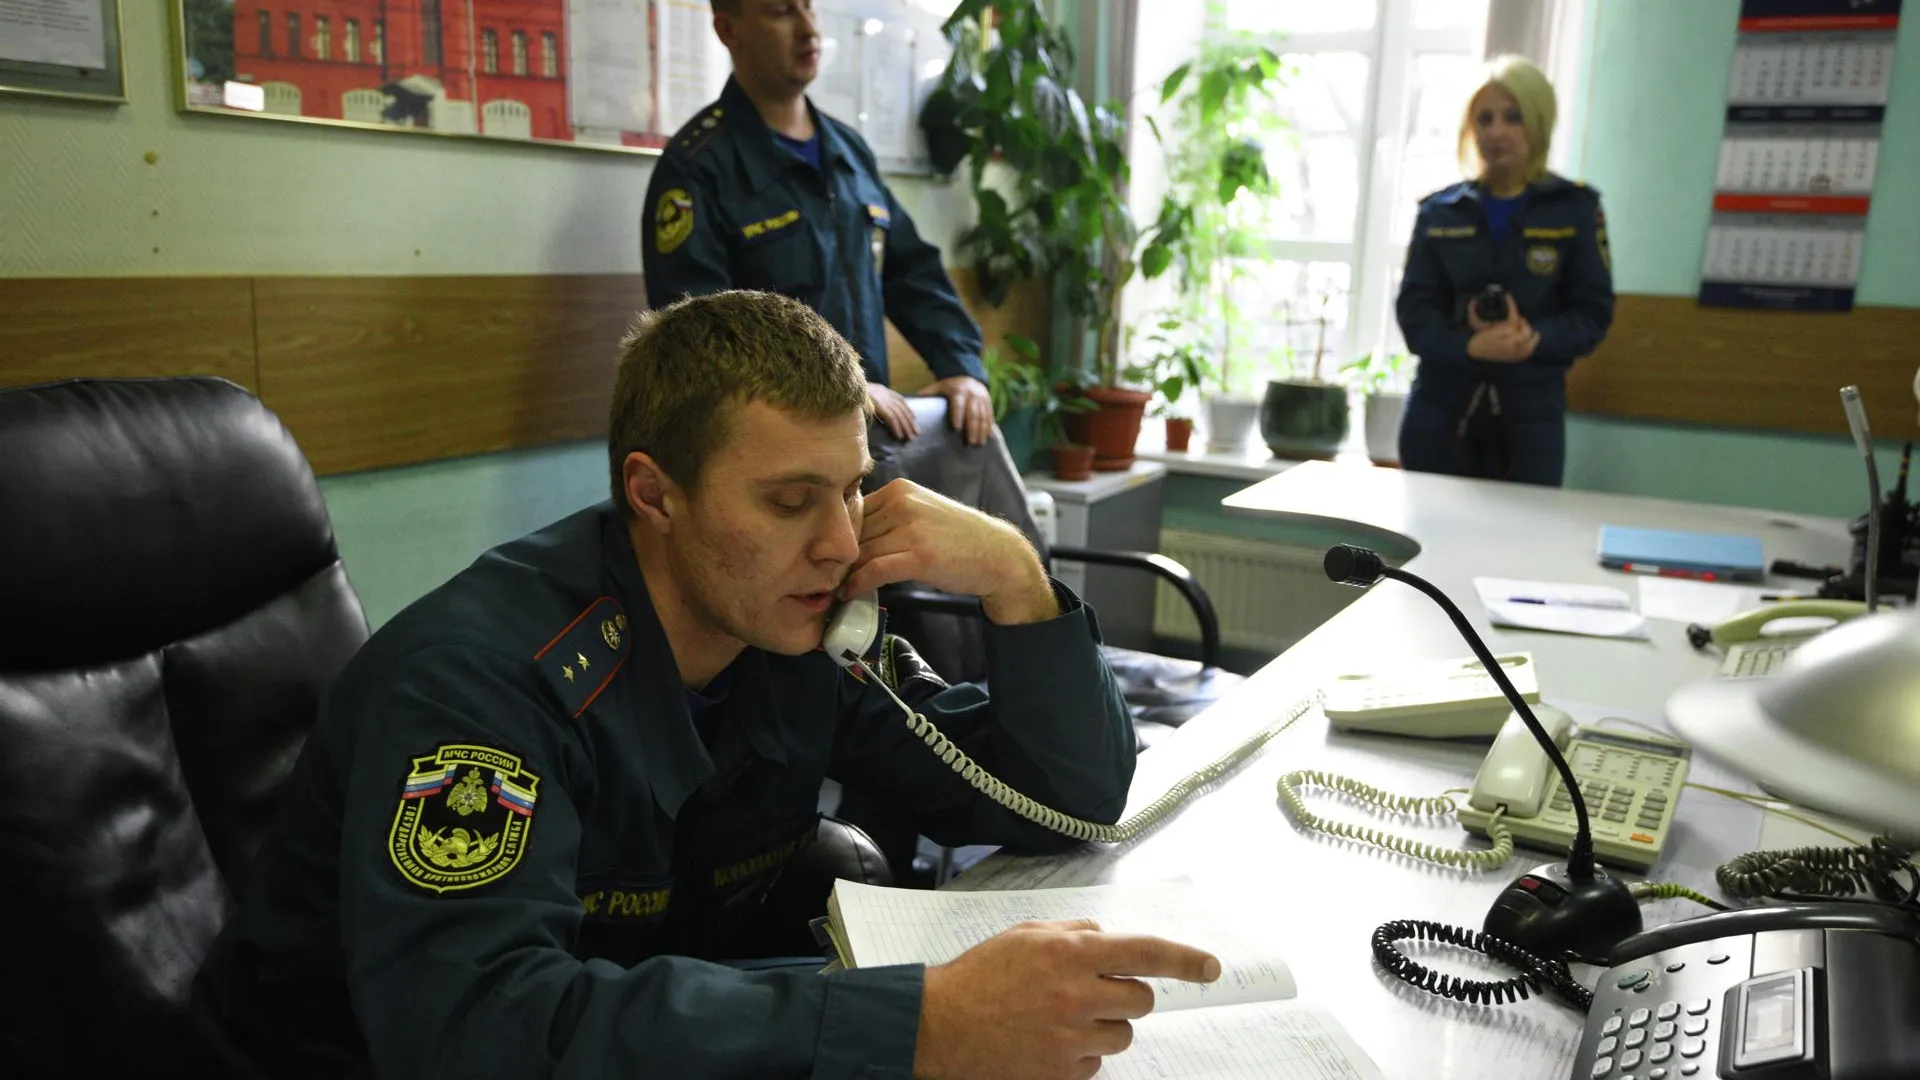 МЧС не зафиксировало превышения нормы аммиака на территории хладокомбината в Москве